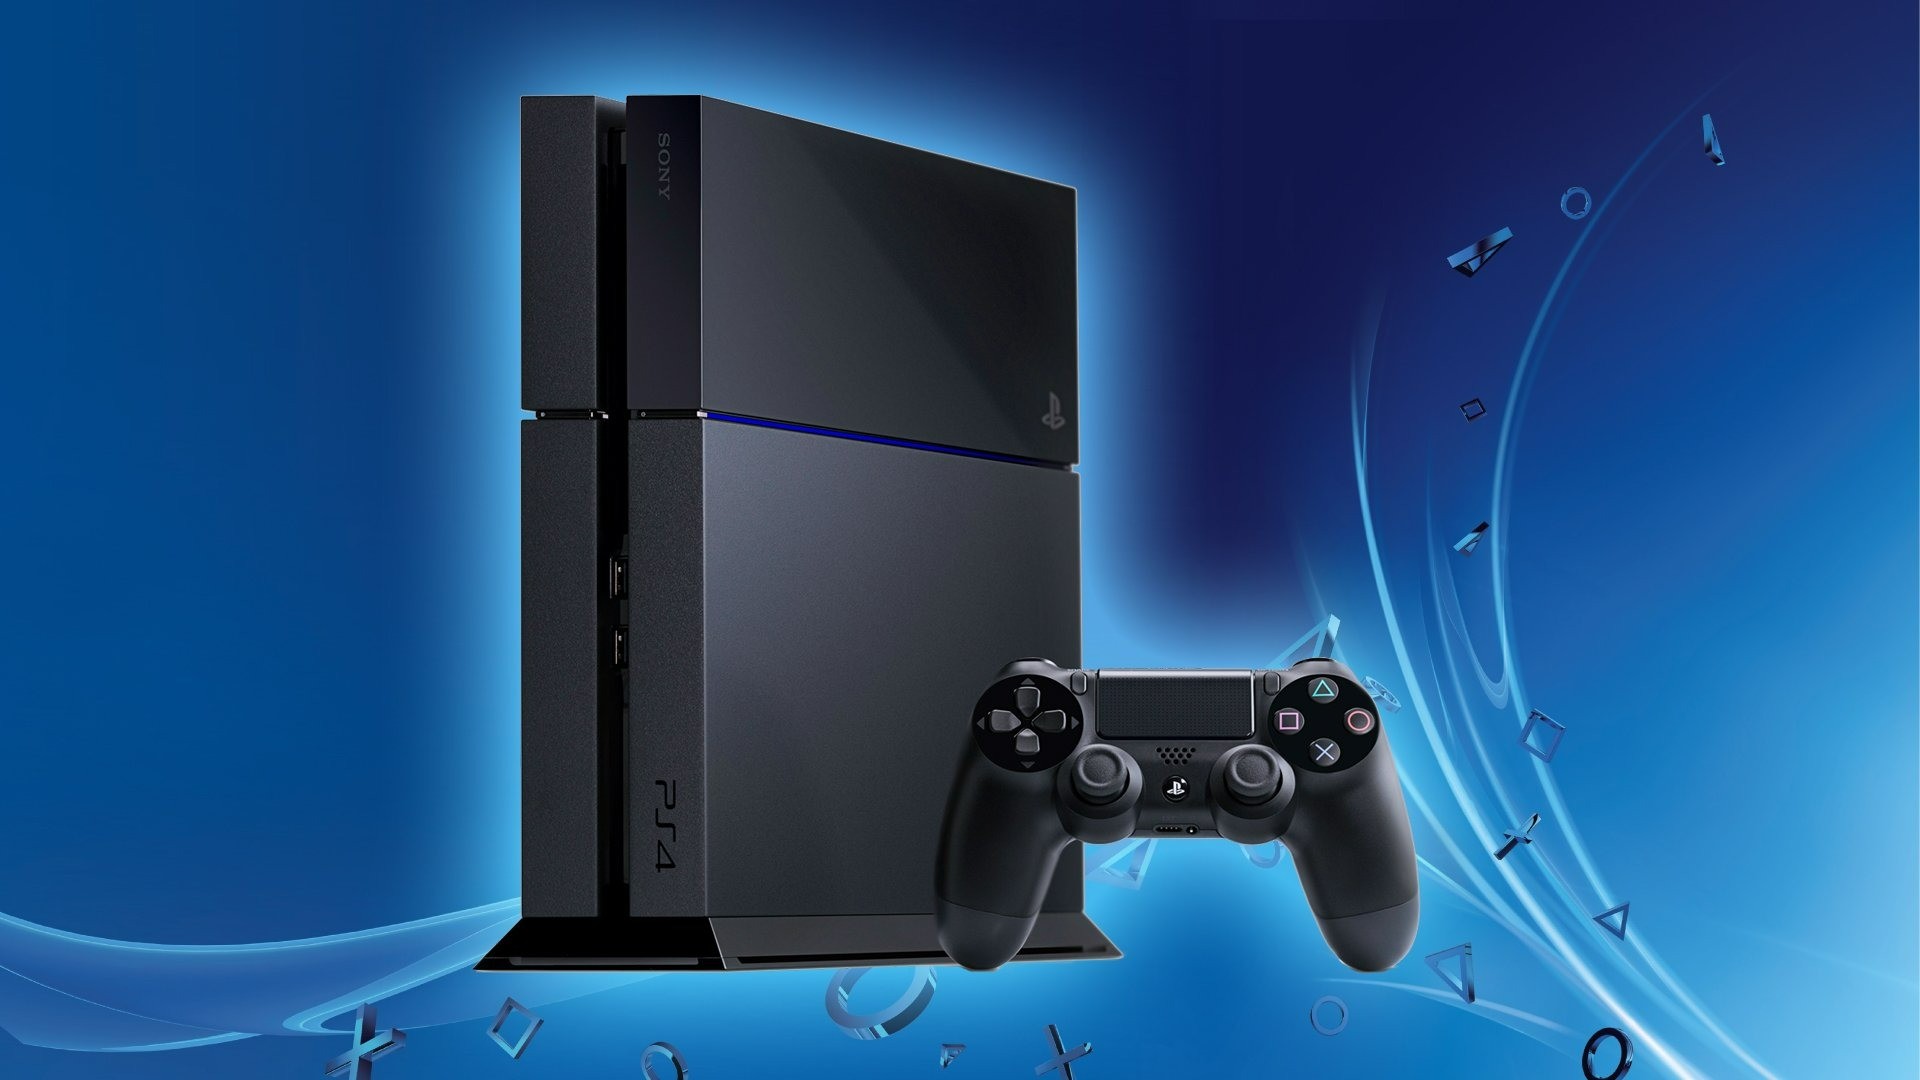 PlayStation: promoções em consoles, acessórios e jogos [Semana 25